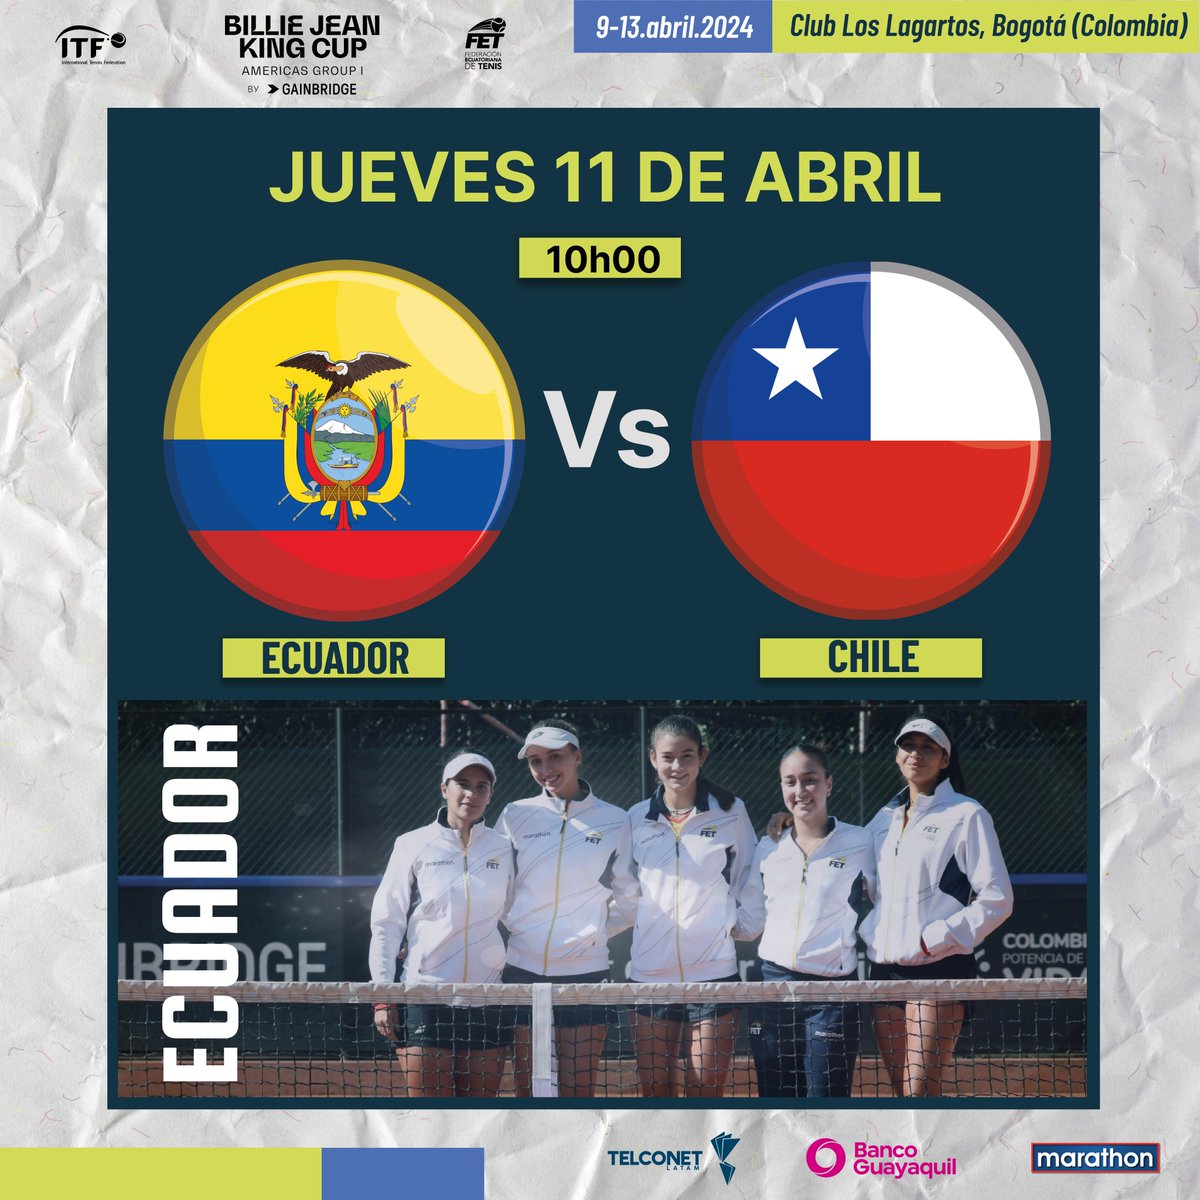 Mañana Ecuador enfrentará a Chile en la Billie Jean King Cup, que se juega del 9 al 13 de abril en el Club Los Lagartos, Bogotá (Colombia). @BJKCup Gracias al auspicio de @TelconetLatam @BancoGuayaquil @marathonsports_